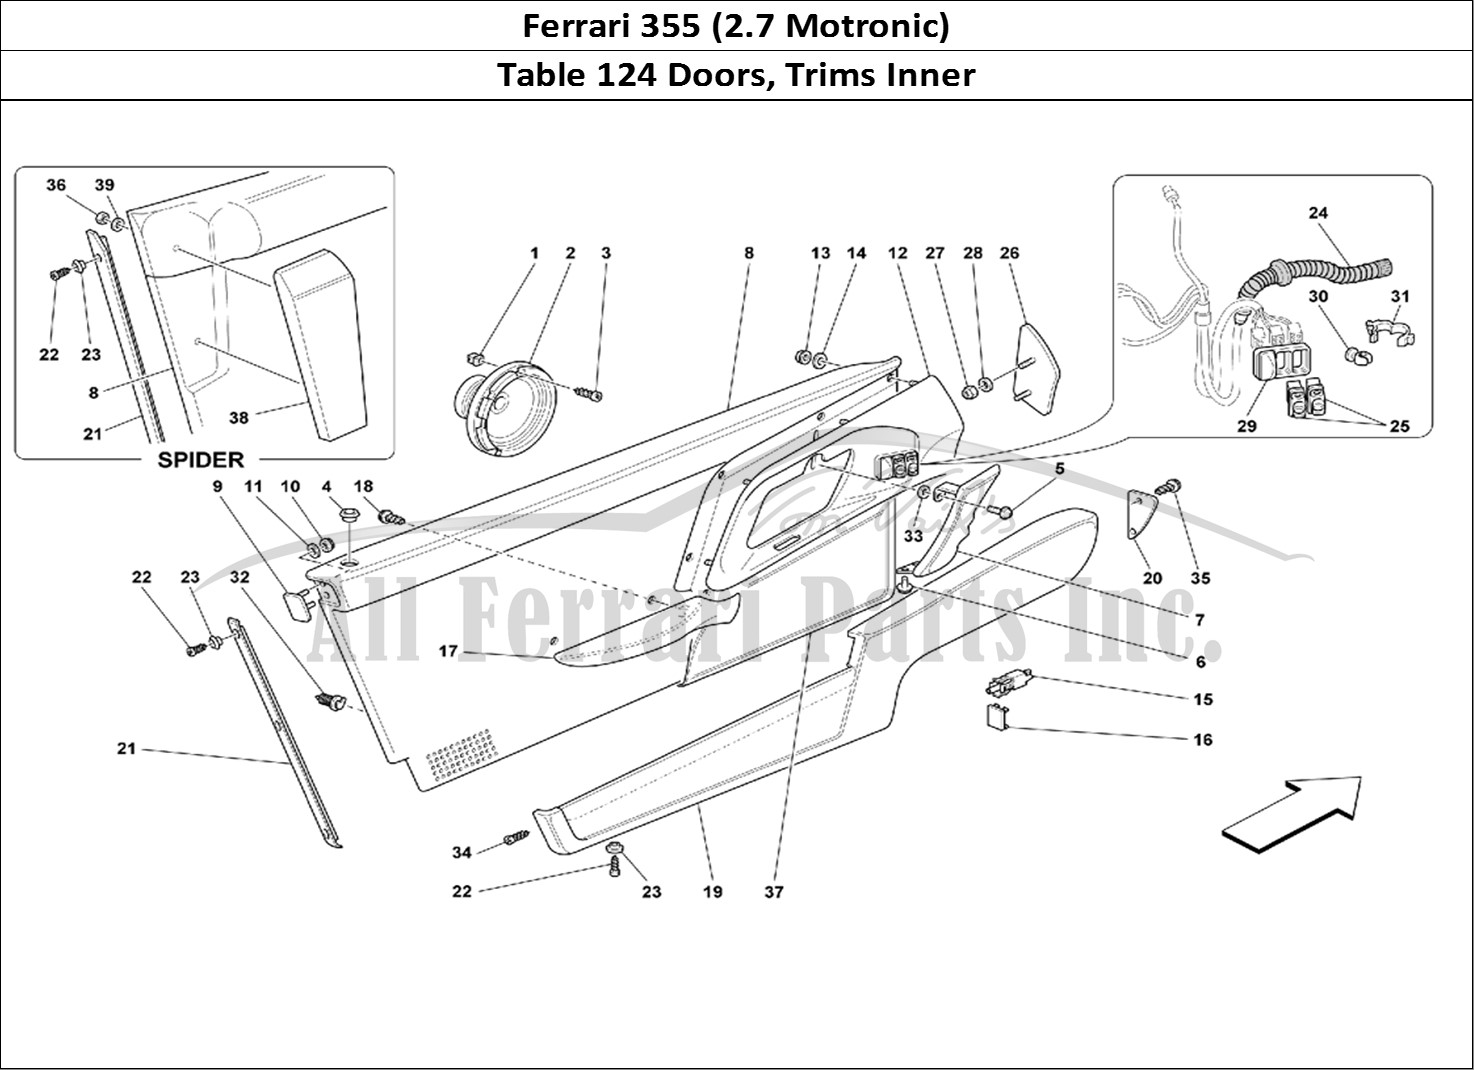 Ferrari Parts Ferrari 355 (2.7 Motronic) Page 124 Doors - Inner Trims